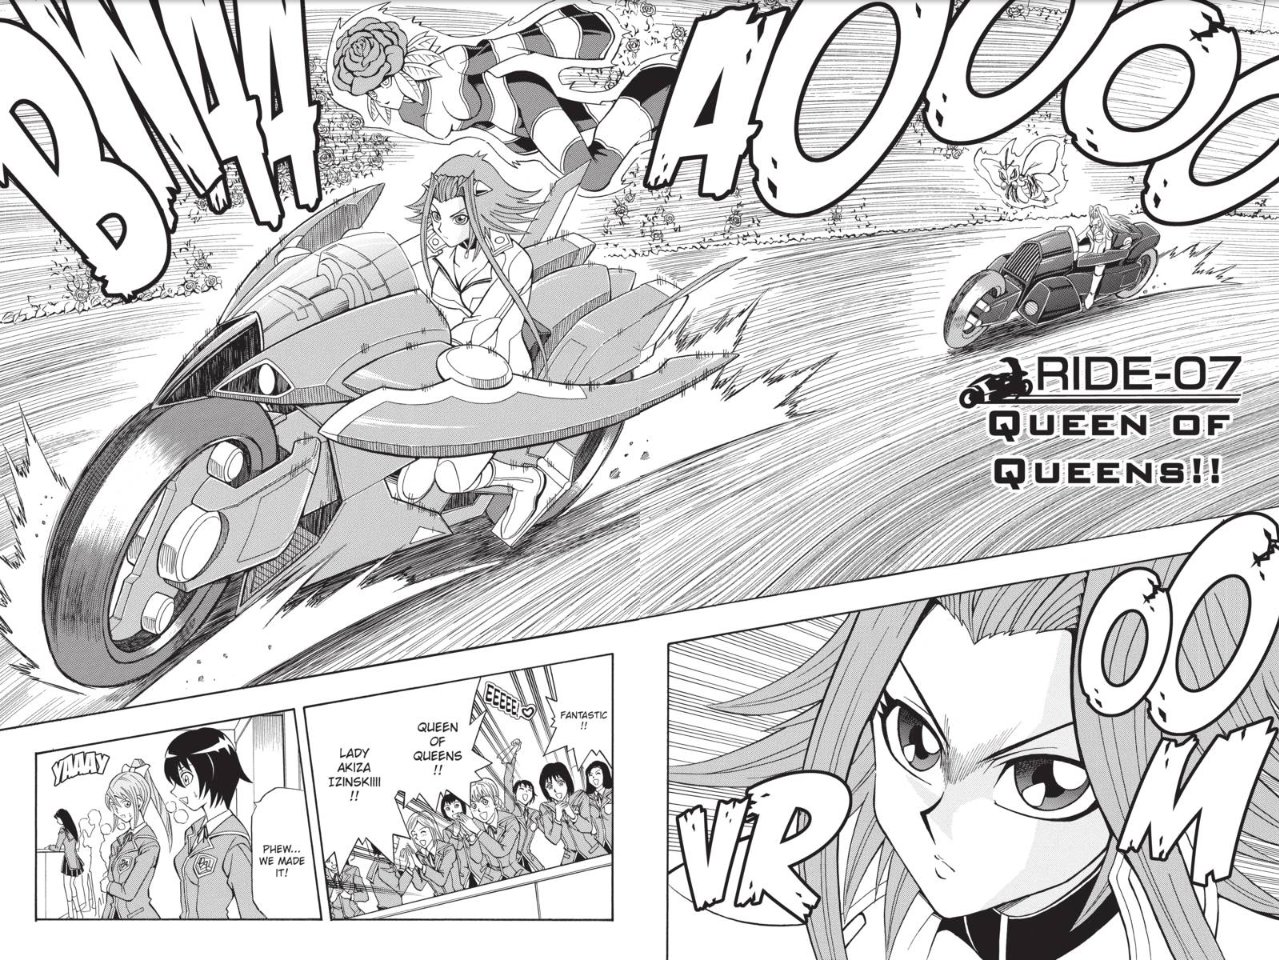 Yu-Gi-Oh! 5D's, Vol. 1: Yusei Fudo, Turbo Duelist!! See more